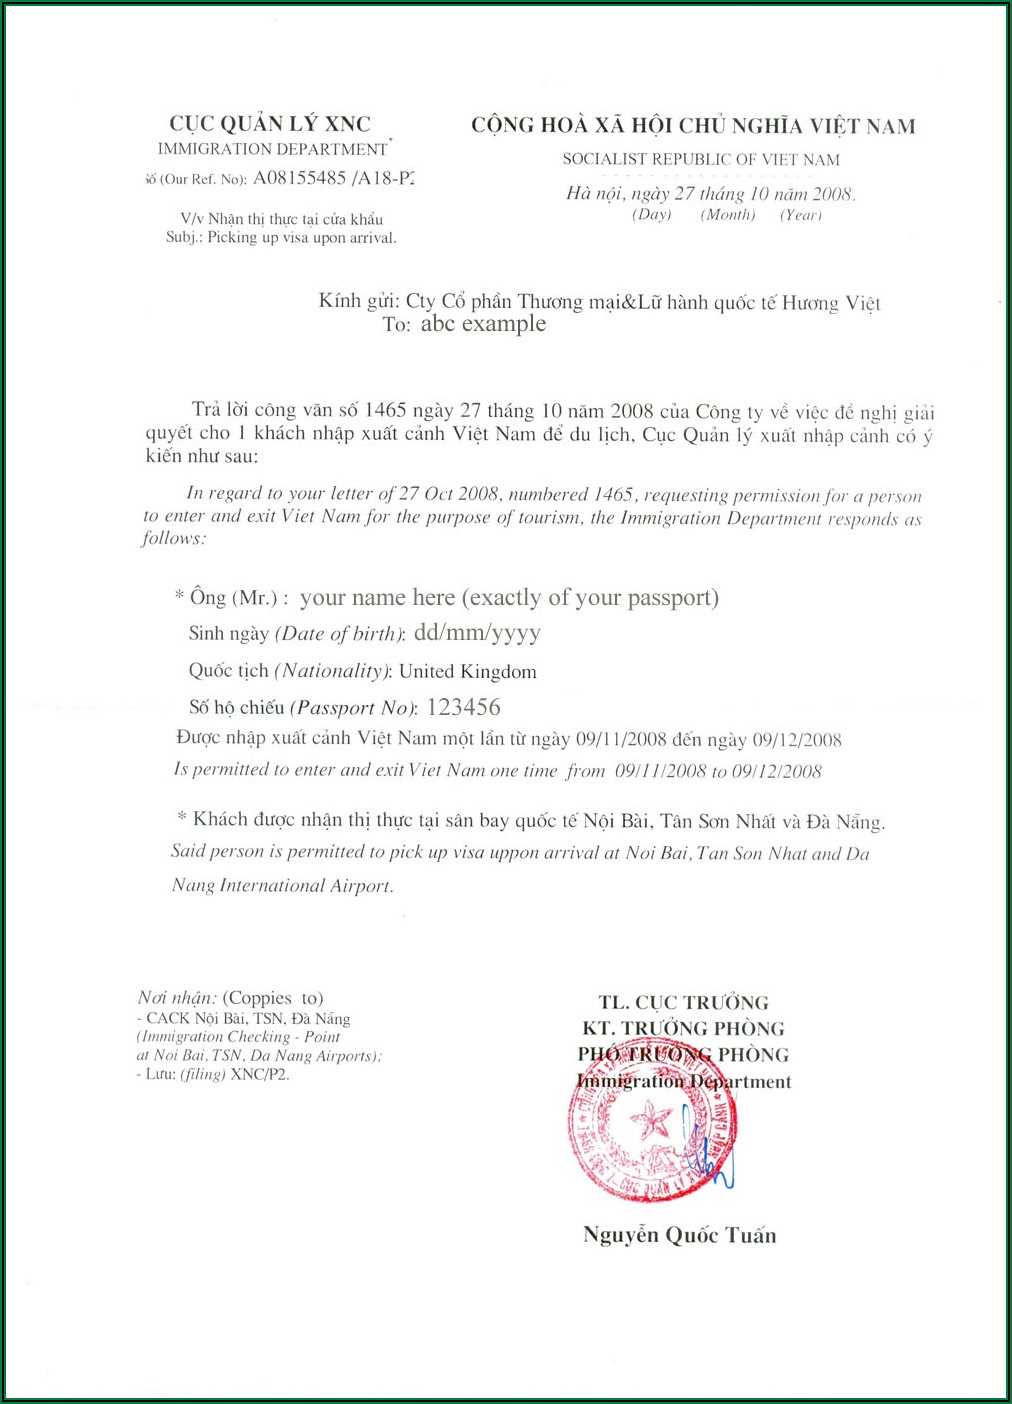 Application Form For Vietnam Visa